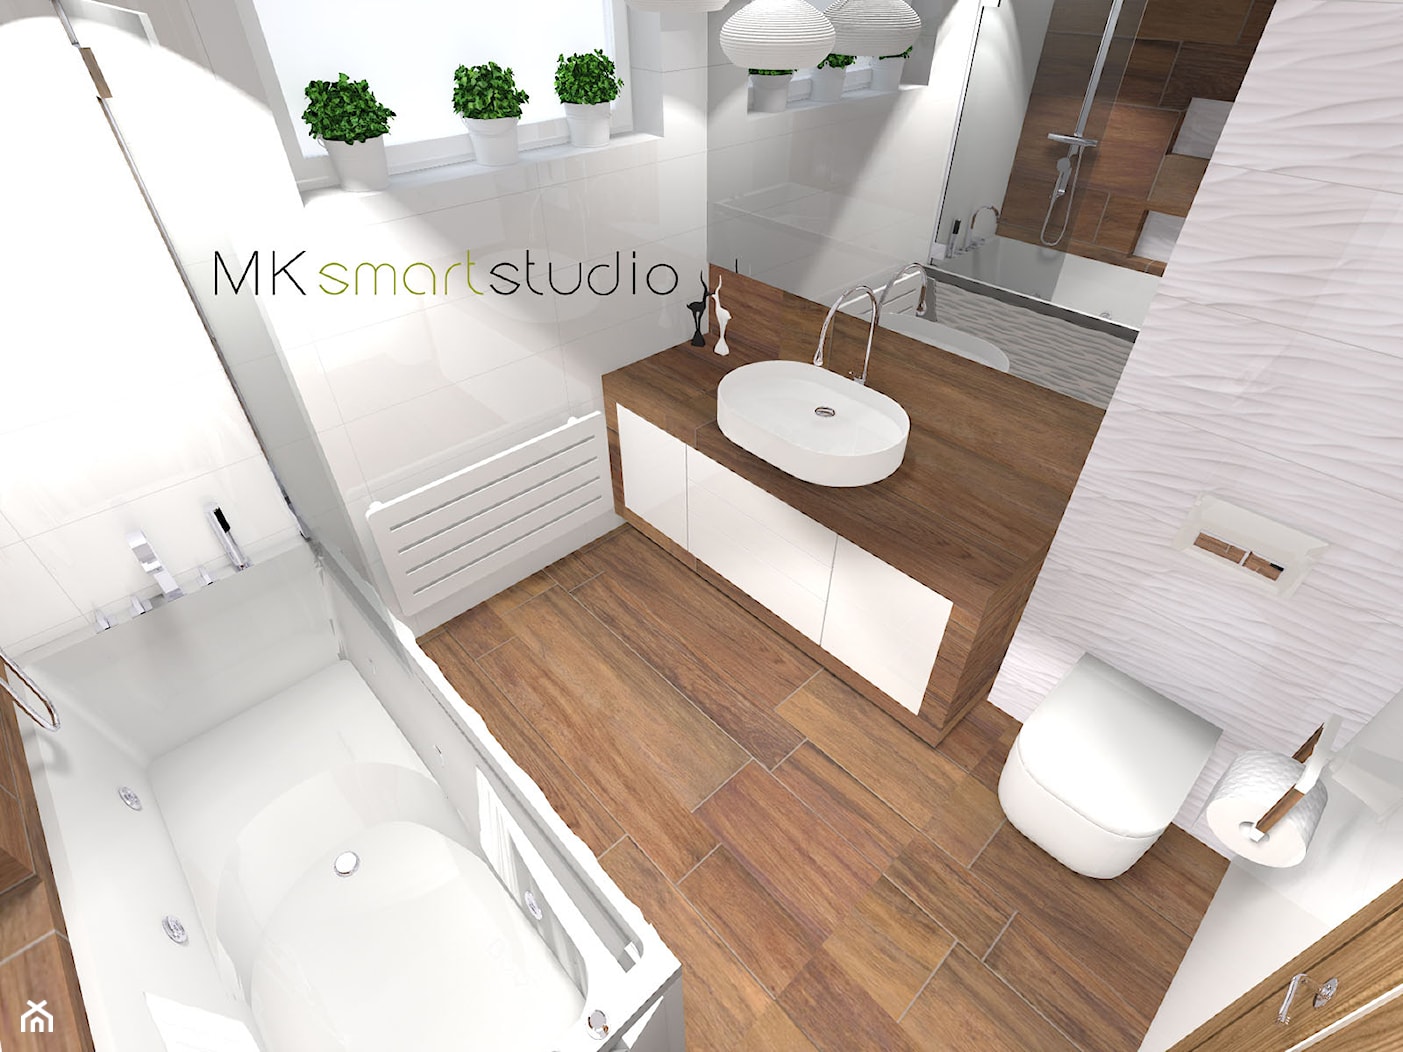 Nowoczesna łazienka w stylu skandynawskim Pani Kasi z Bedworth - zdjęcie od MKsmartstudio - Homebook